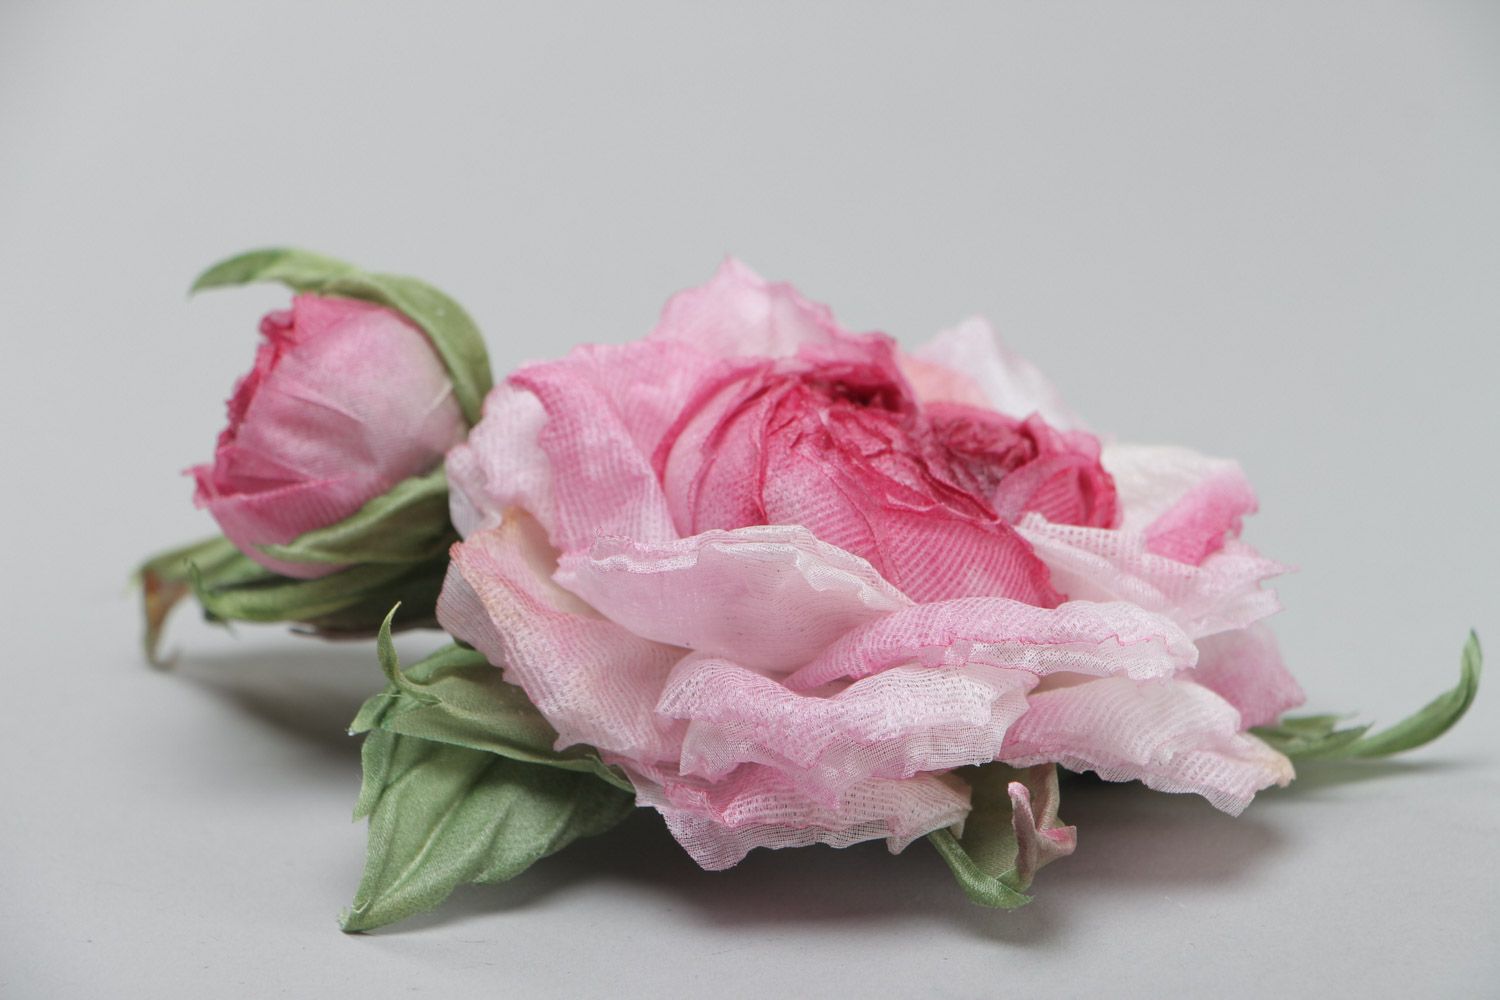 Massive exklusive Rose Brosche aus Stoff für elegante Looks und schicke Damen foto 3